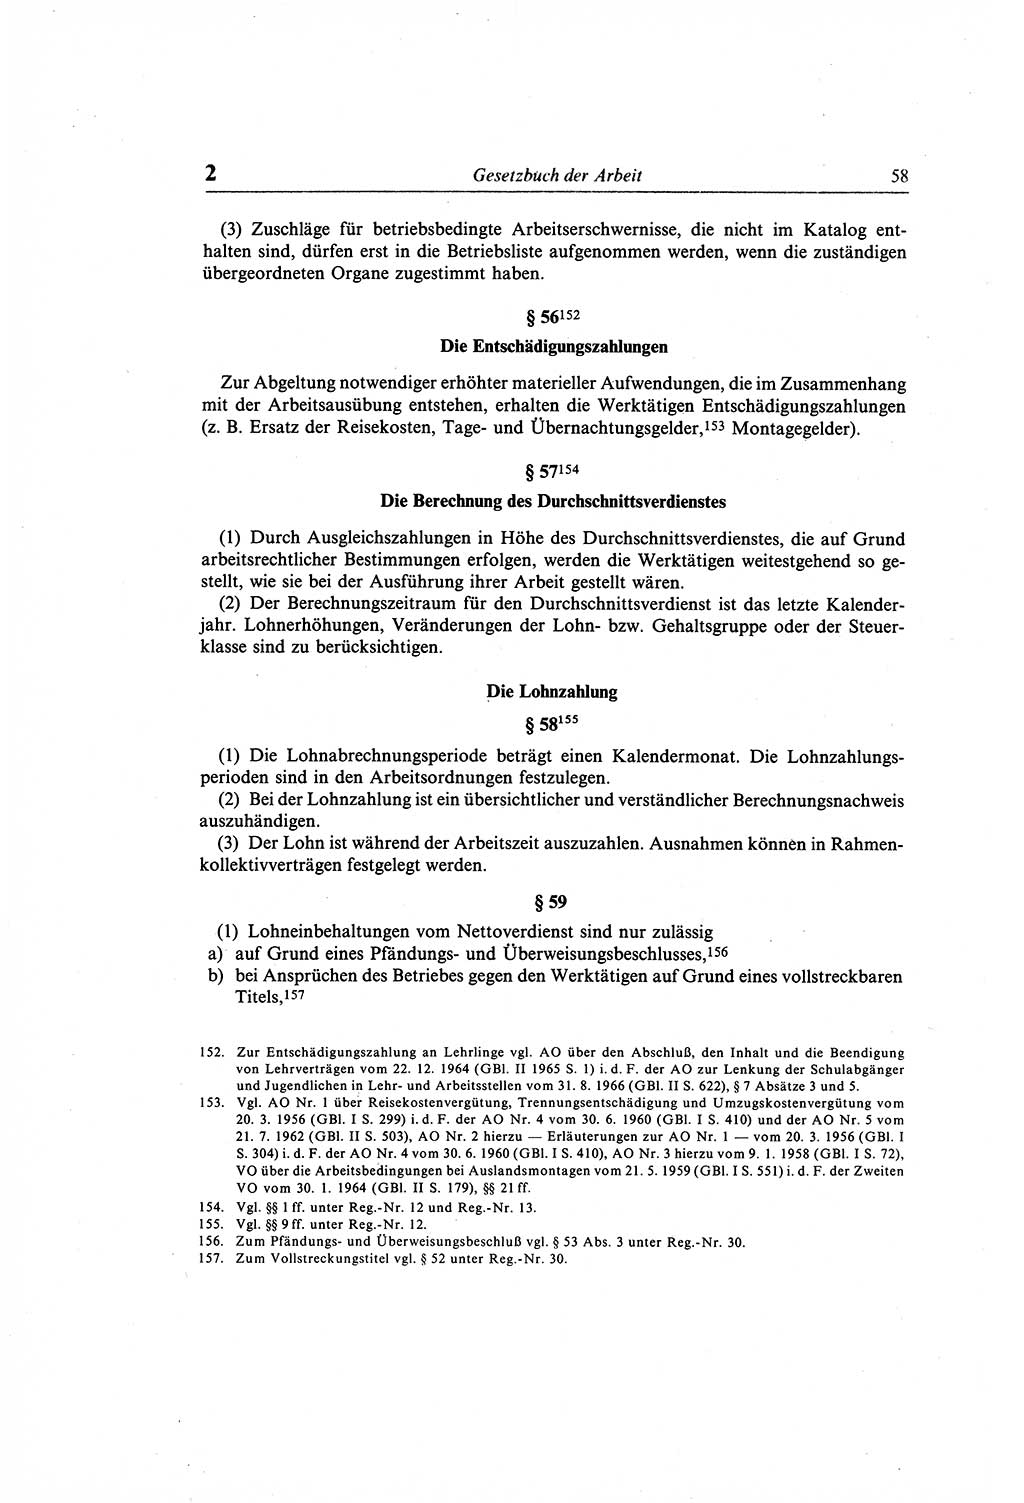 Gesetzbuch der Arbeit (GBA) und andere ausgewählte rechtliche Bestimmungen [Deutsche Demokratische Republik (DDR)] 1968, Seite 58 (GBA DDR 1968, S. 58)